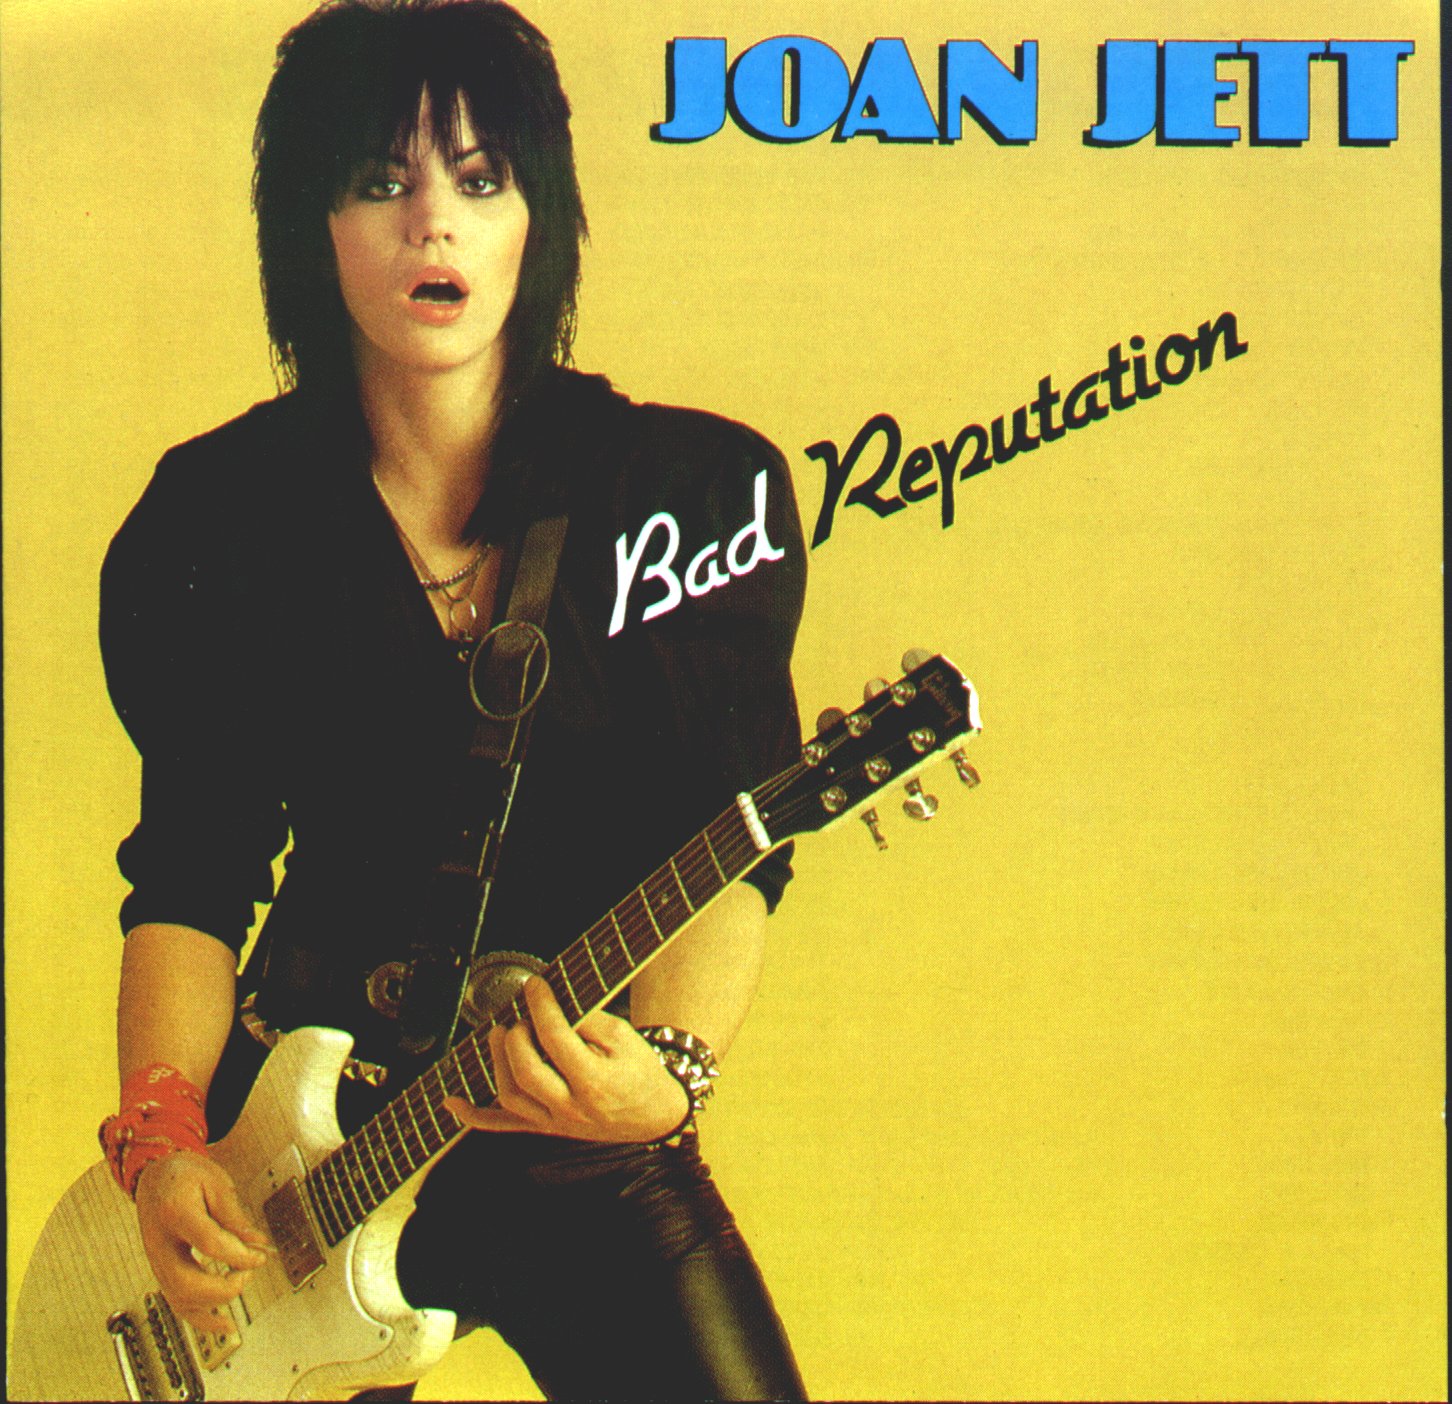 joan jett album cover